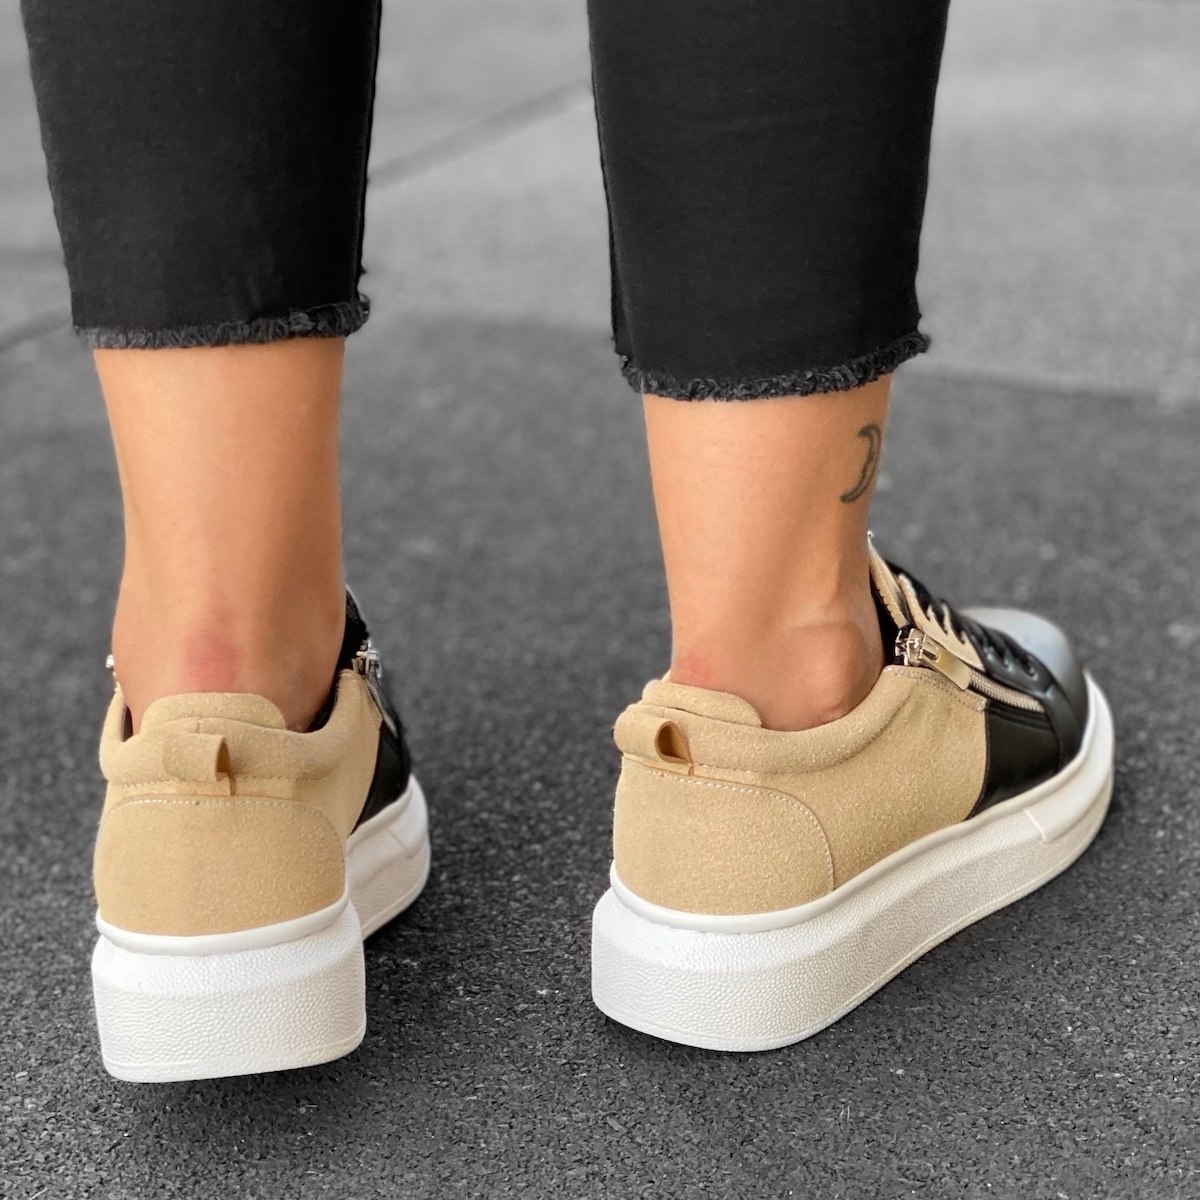 Women's Hype Sole Zipped Style Sneakers In Cream-Black - 4